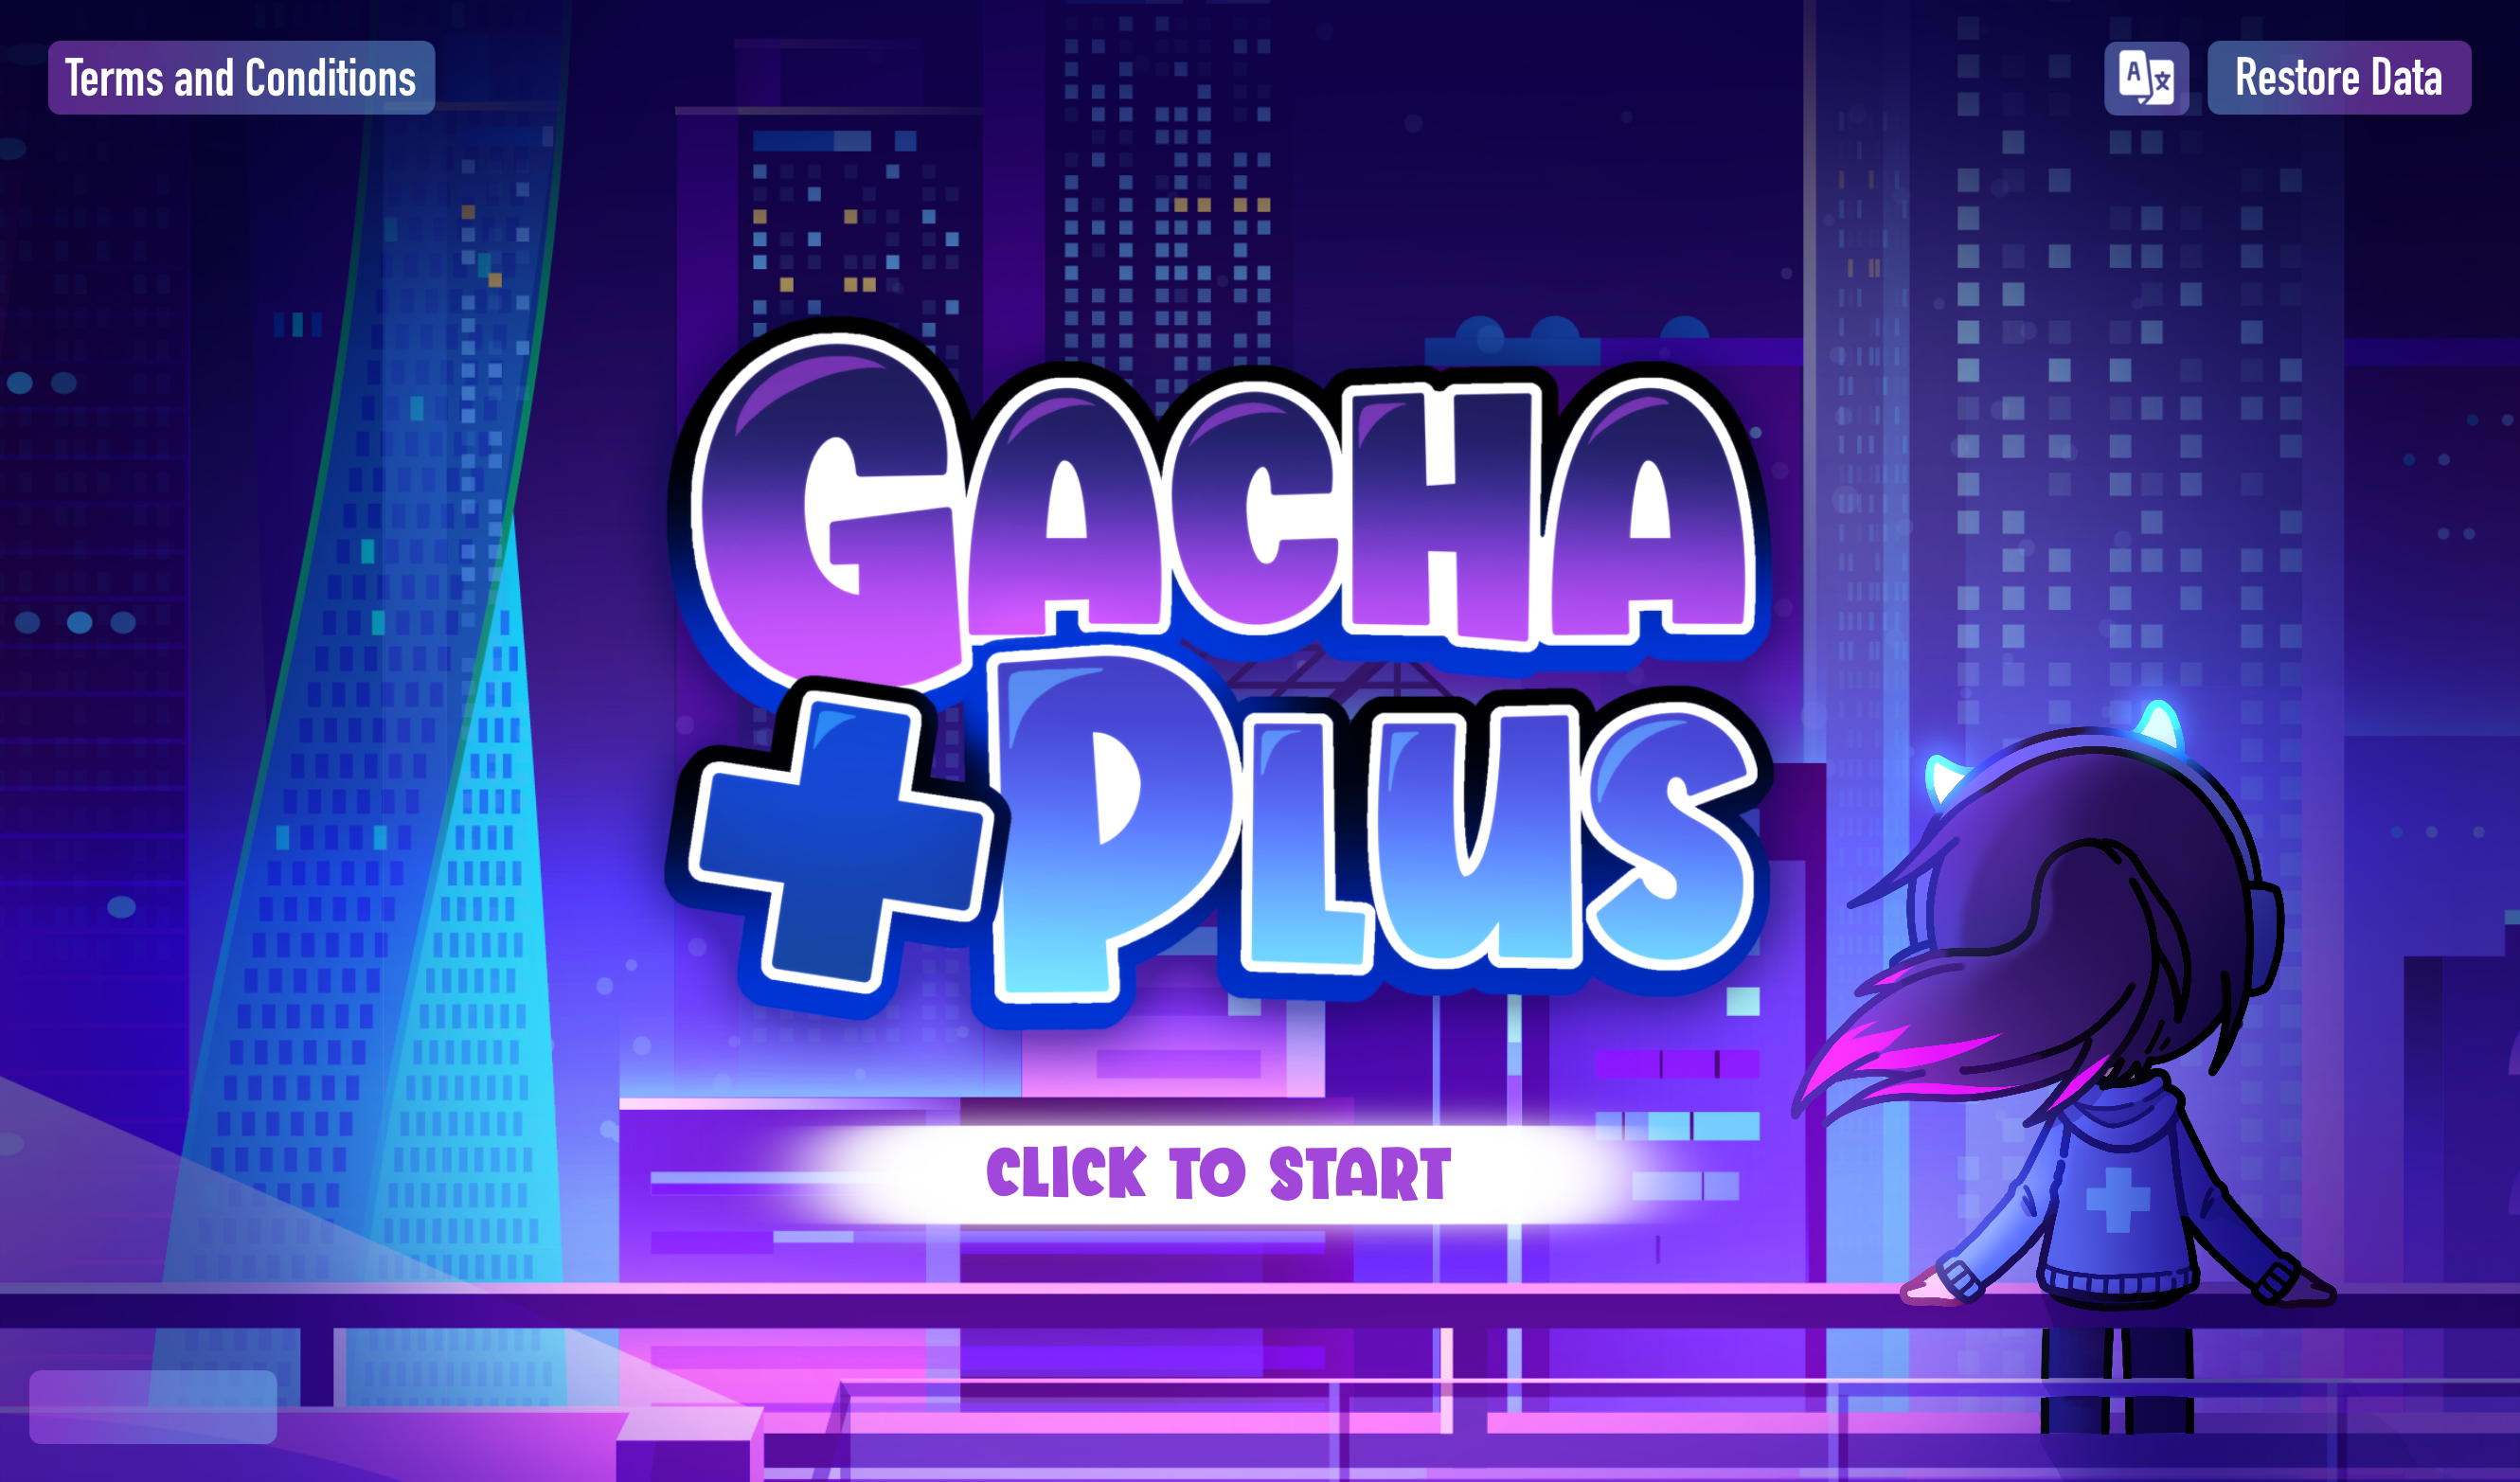 Gacha Club 1.0 - Download for PC Free